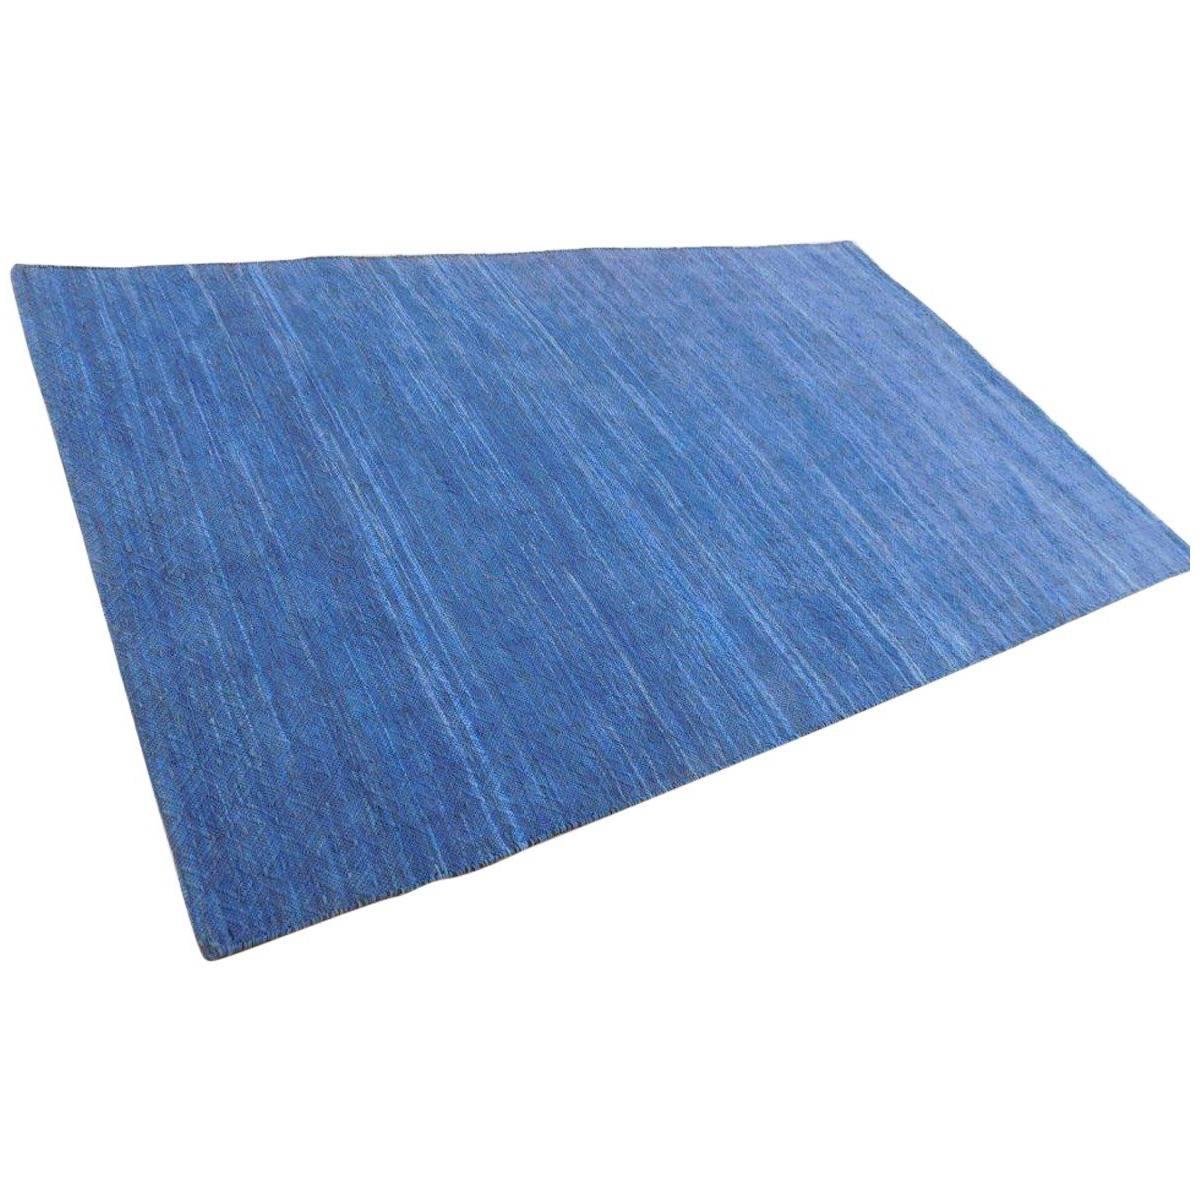 Zeitgenössischer flachgewebter Teppich aus Wildleder in Indigo, Denim und Blau, auf Lager